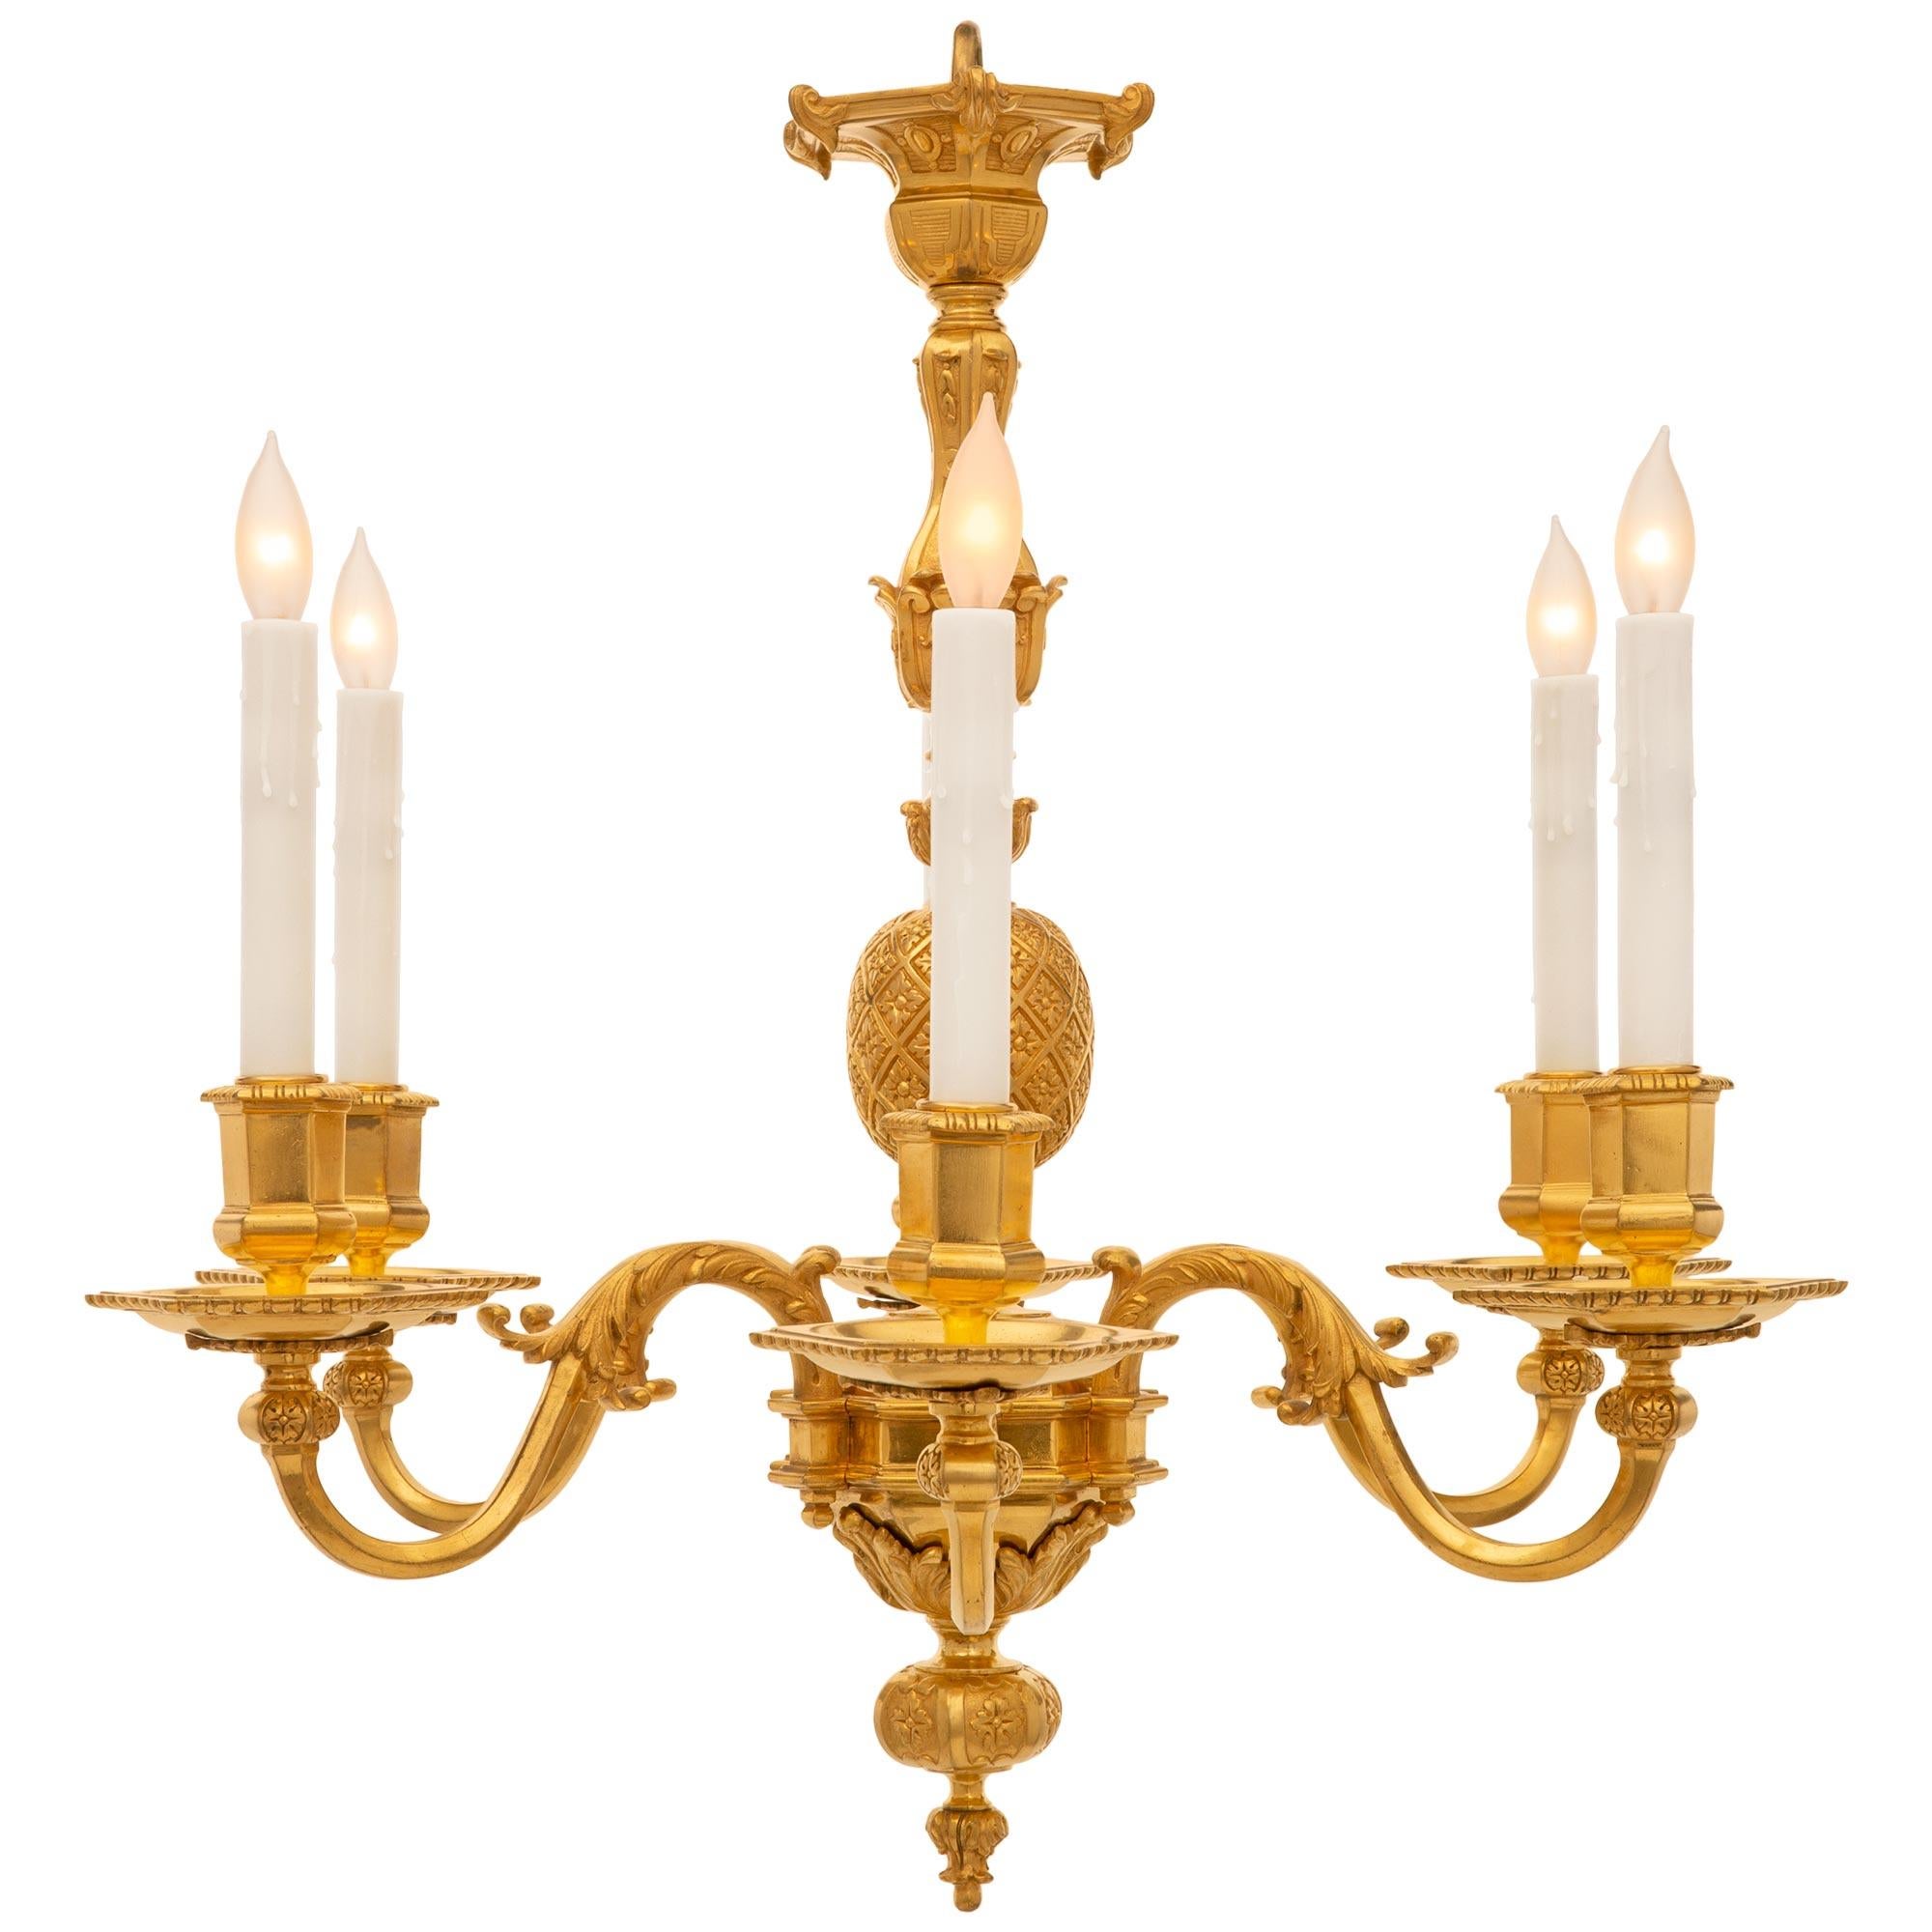 Un lustre en bronze doré de style Louis XIV du 19ème siècle, attribué à Viane. Le lustre à six bras est centré par un magnifique épi floral richement ciselé qui mène à des feuilles d'acanthe entourant le corps. Les six bras carrés aux élégantes